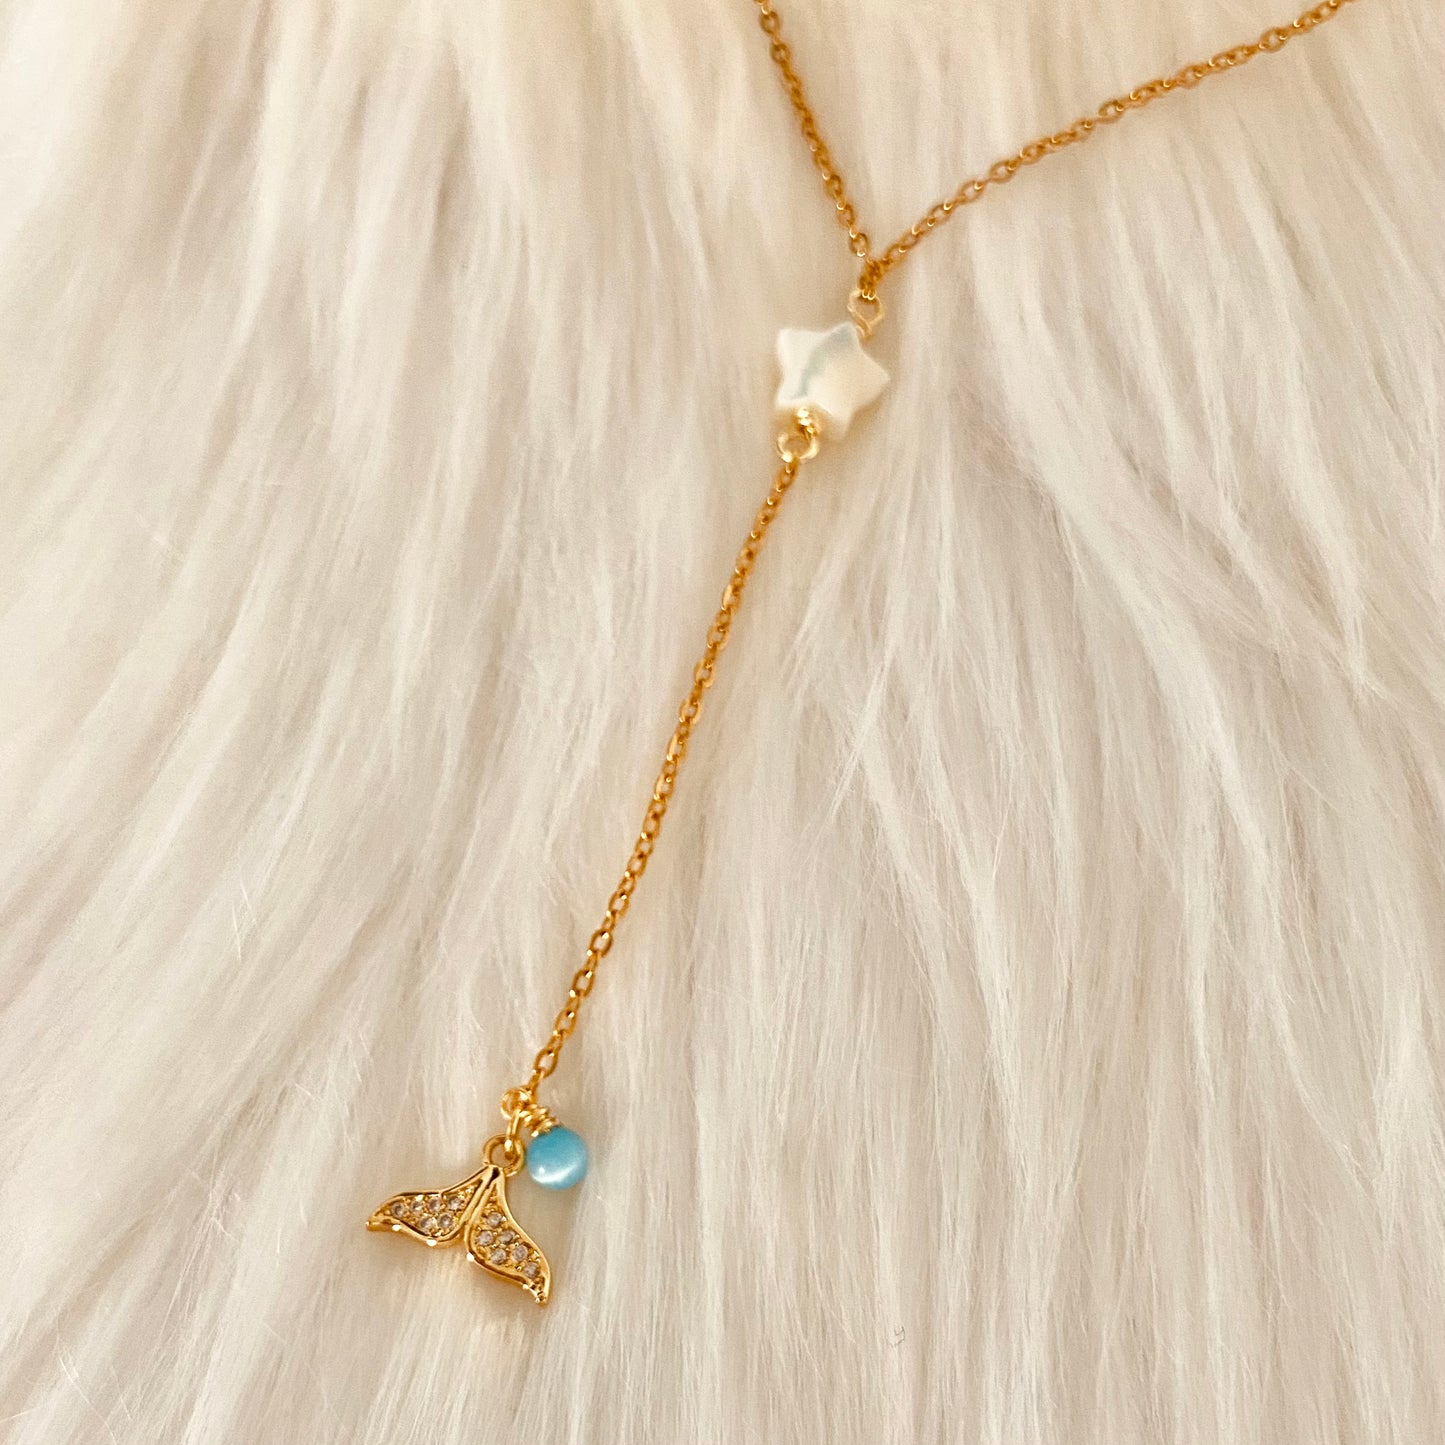 Ula “Y” necklace